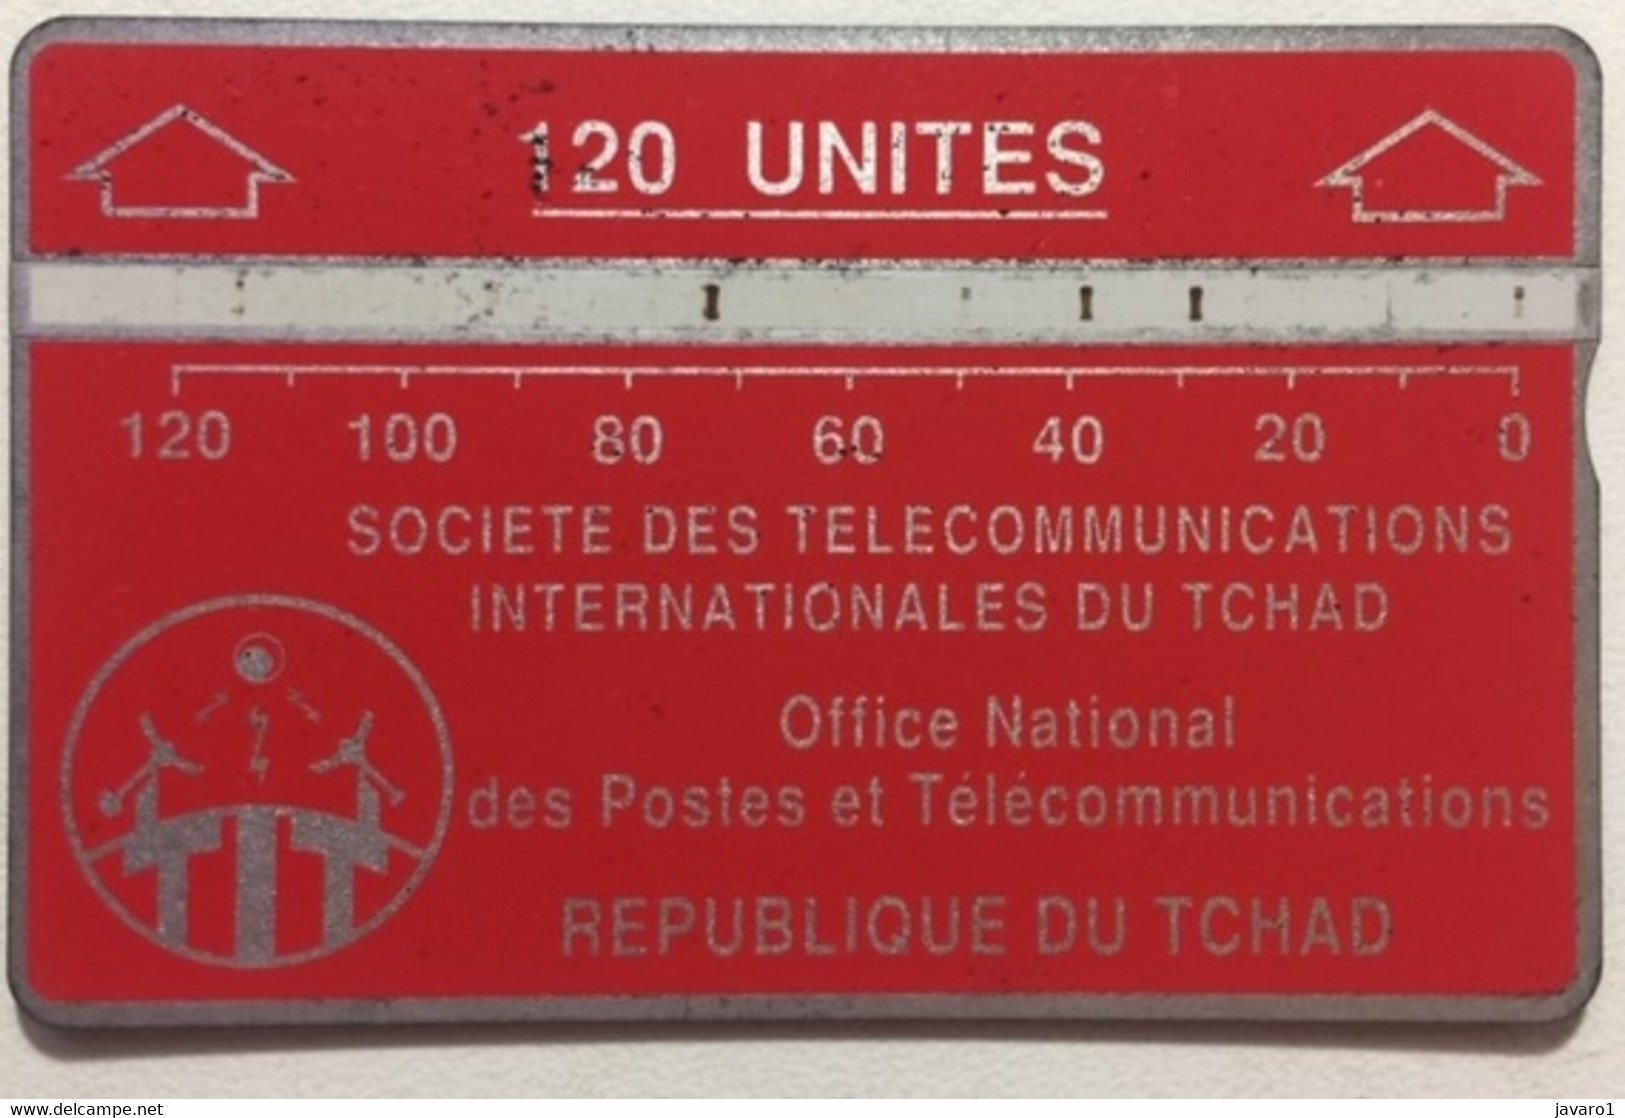 TCHAD : CHD06C 120 U Red Notched Typo 244C USED - Tchad